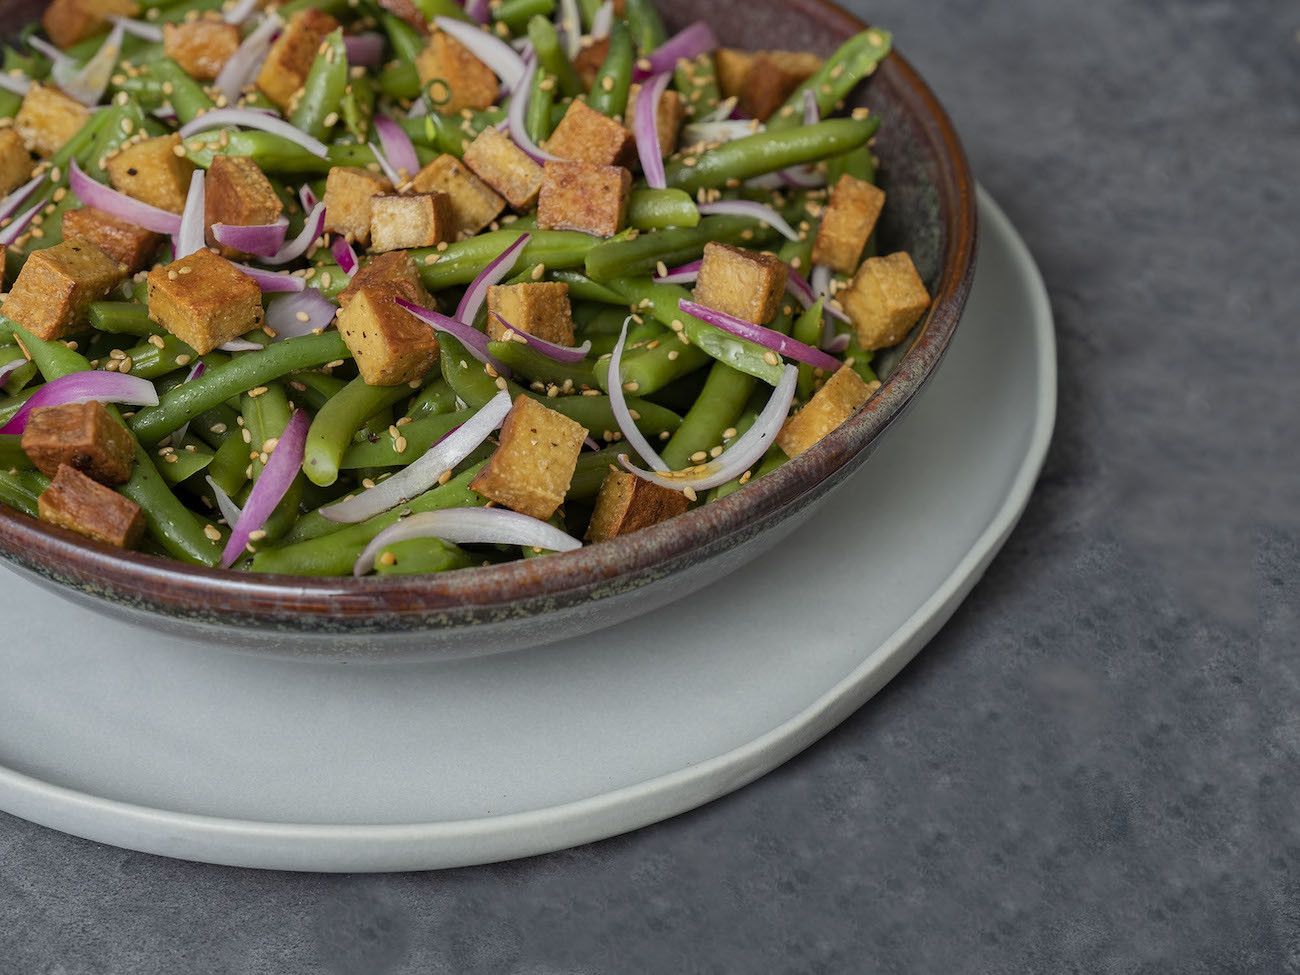 Foodblog, About Fuel, Rezept, Stangenbohnensalat mit geräuchertem Tofu, Sesam und roten Zwiebeln, Salat, Sesam